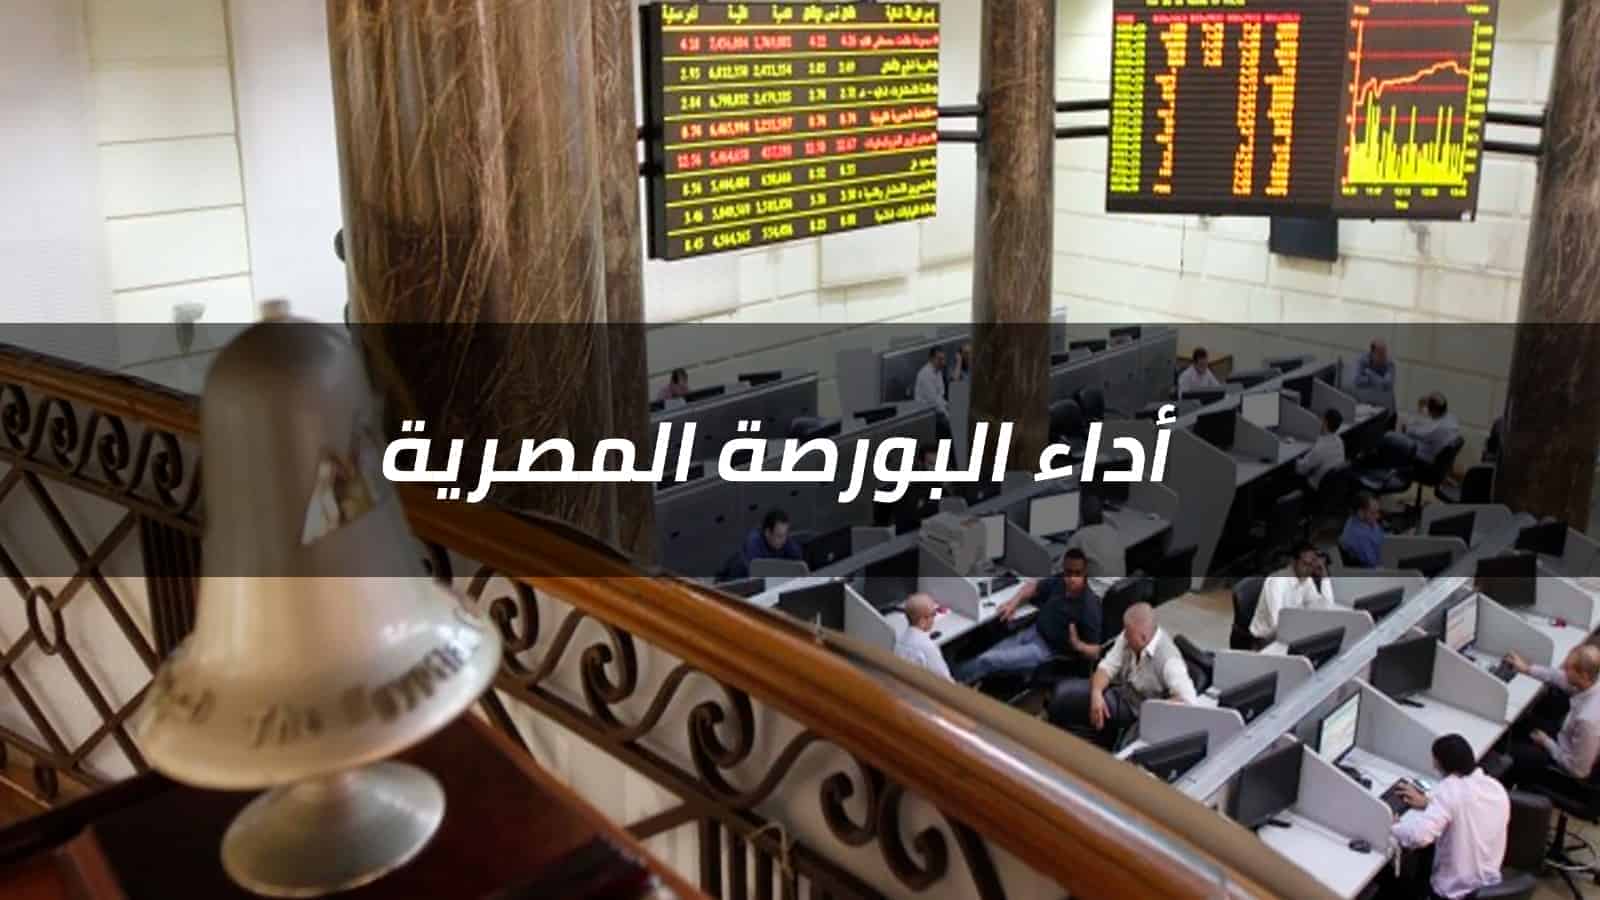 تلون مؤشرات السوق بالأحمر تحت ضغط مبيعات العرب بختام تعاملات الأربعاء